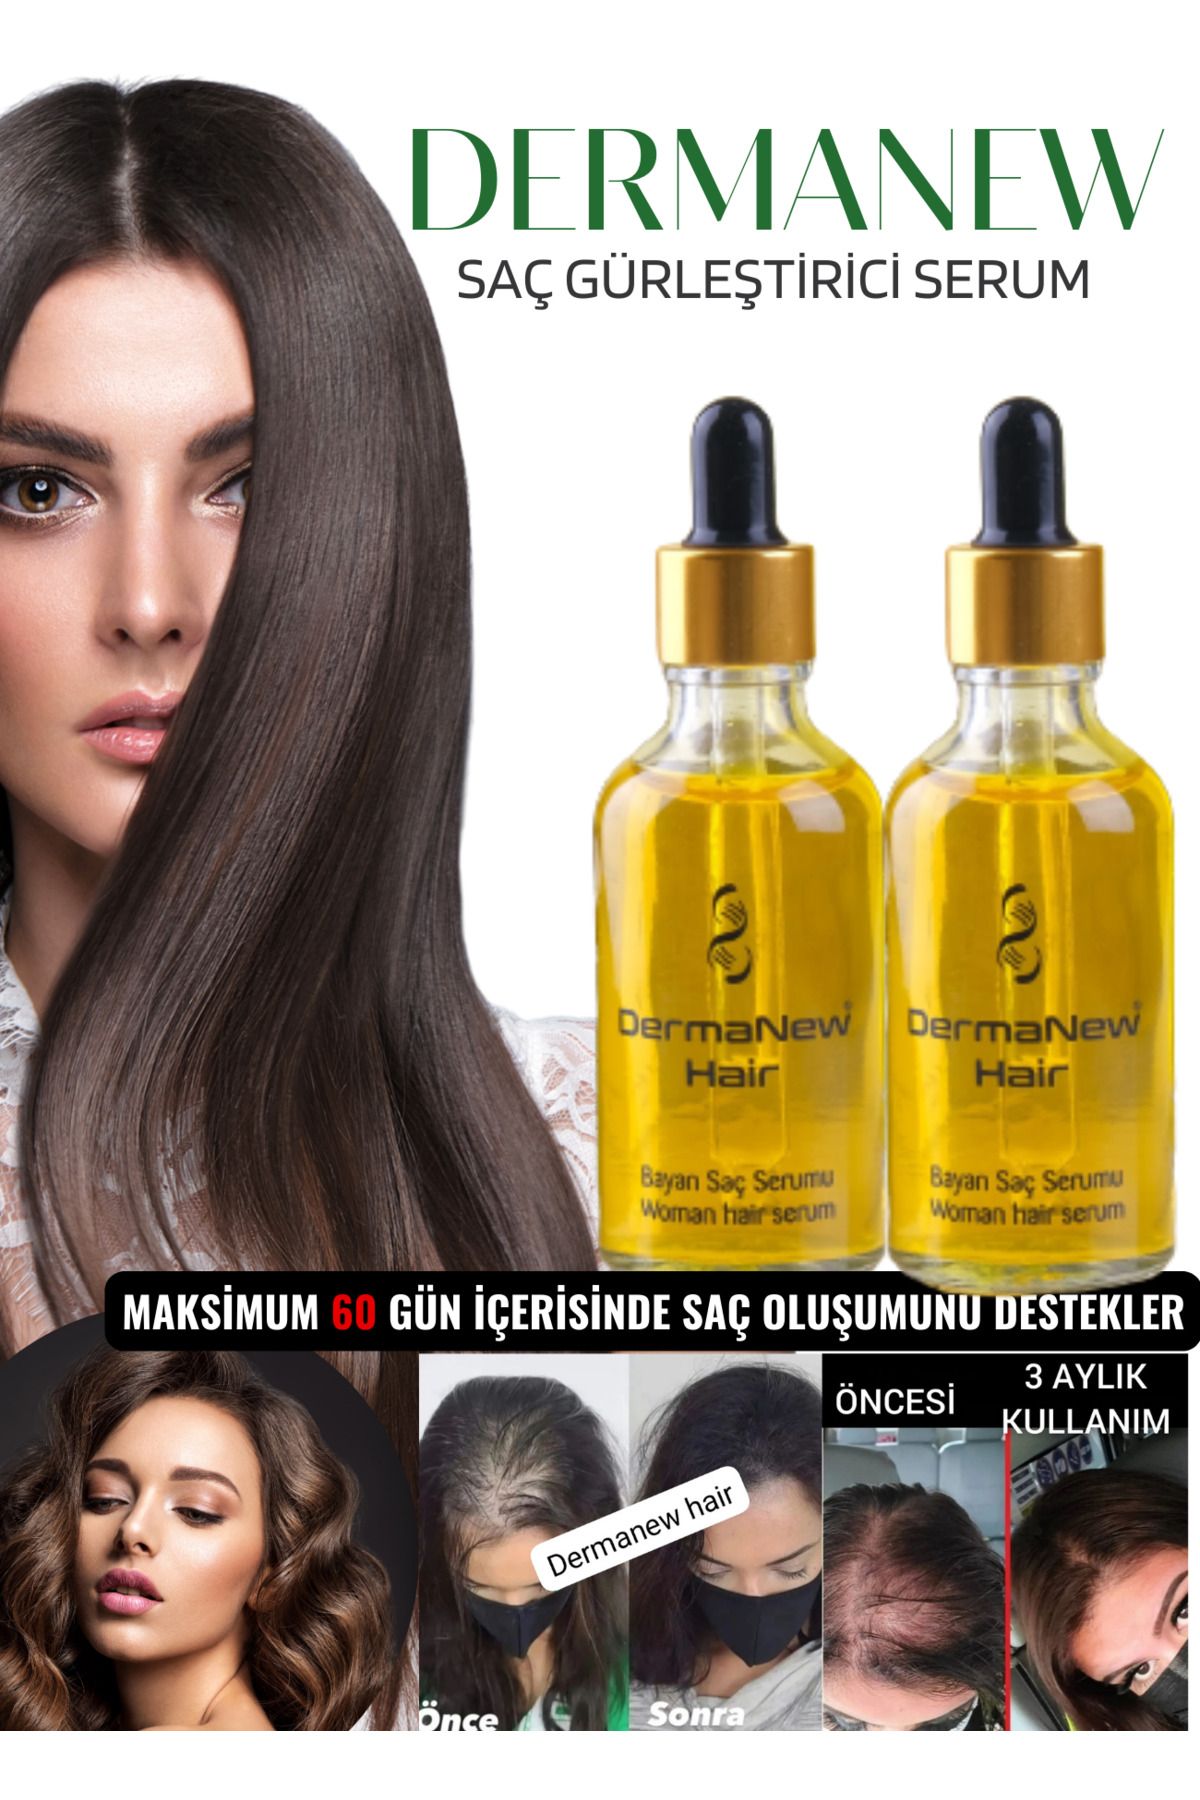 dermanew hair Dermanew Kadın Saç Gürleştirici Serum - Saç Bakim - Saç Çıkartıcı - Hair - Sac / 2 Adet Serum